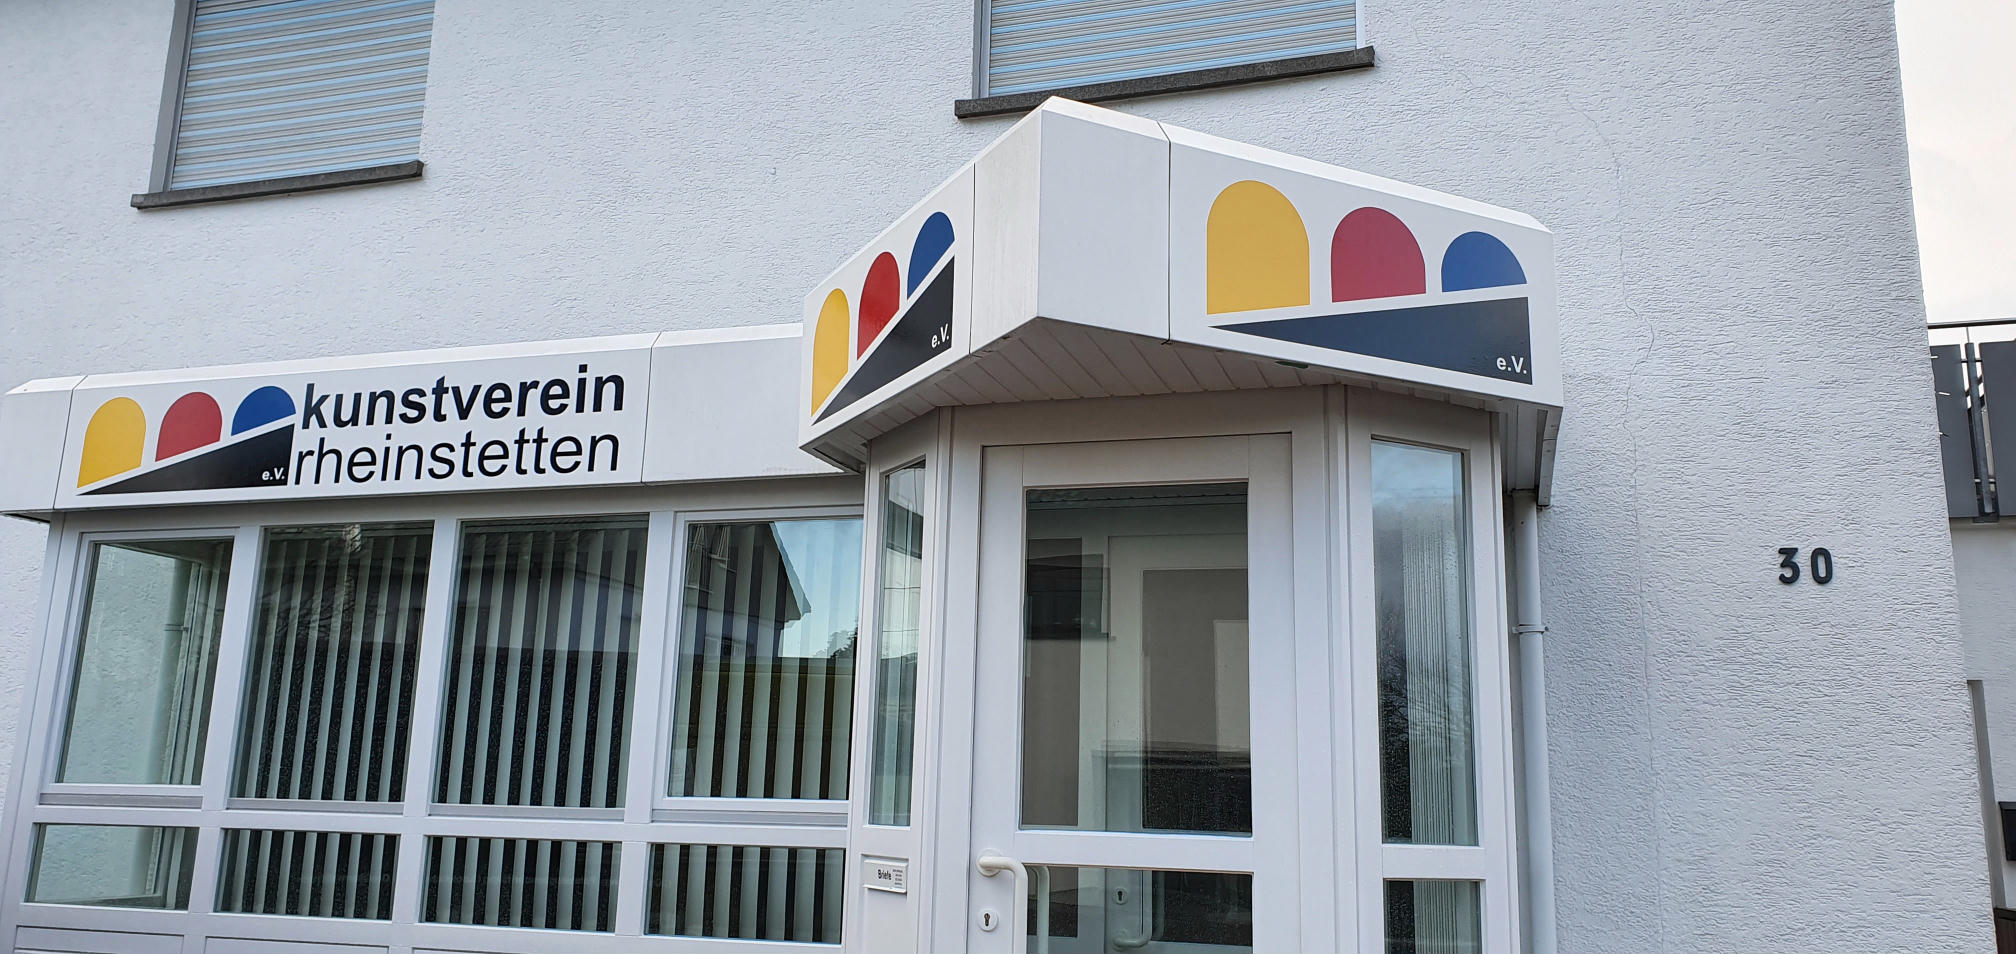 Kunstverein Rheinstetten e.V. - Rappenwörthstr. 30